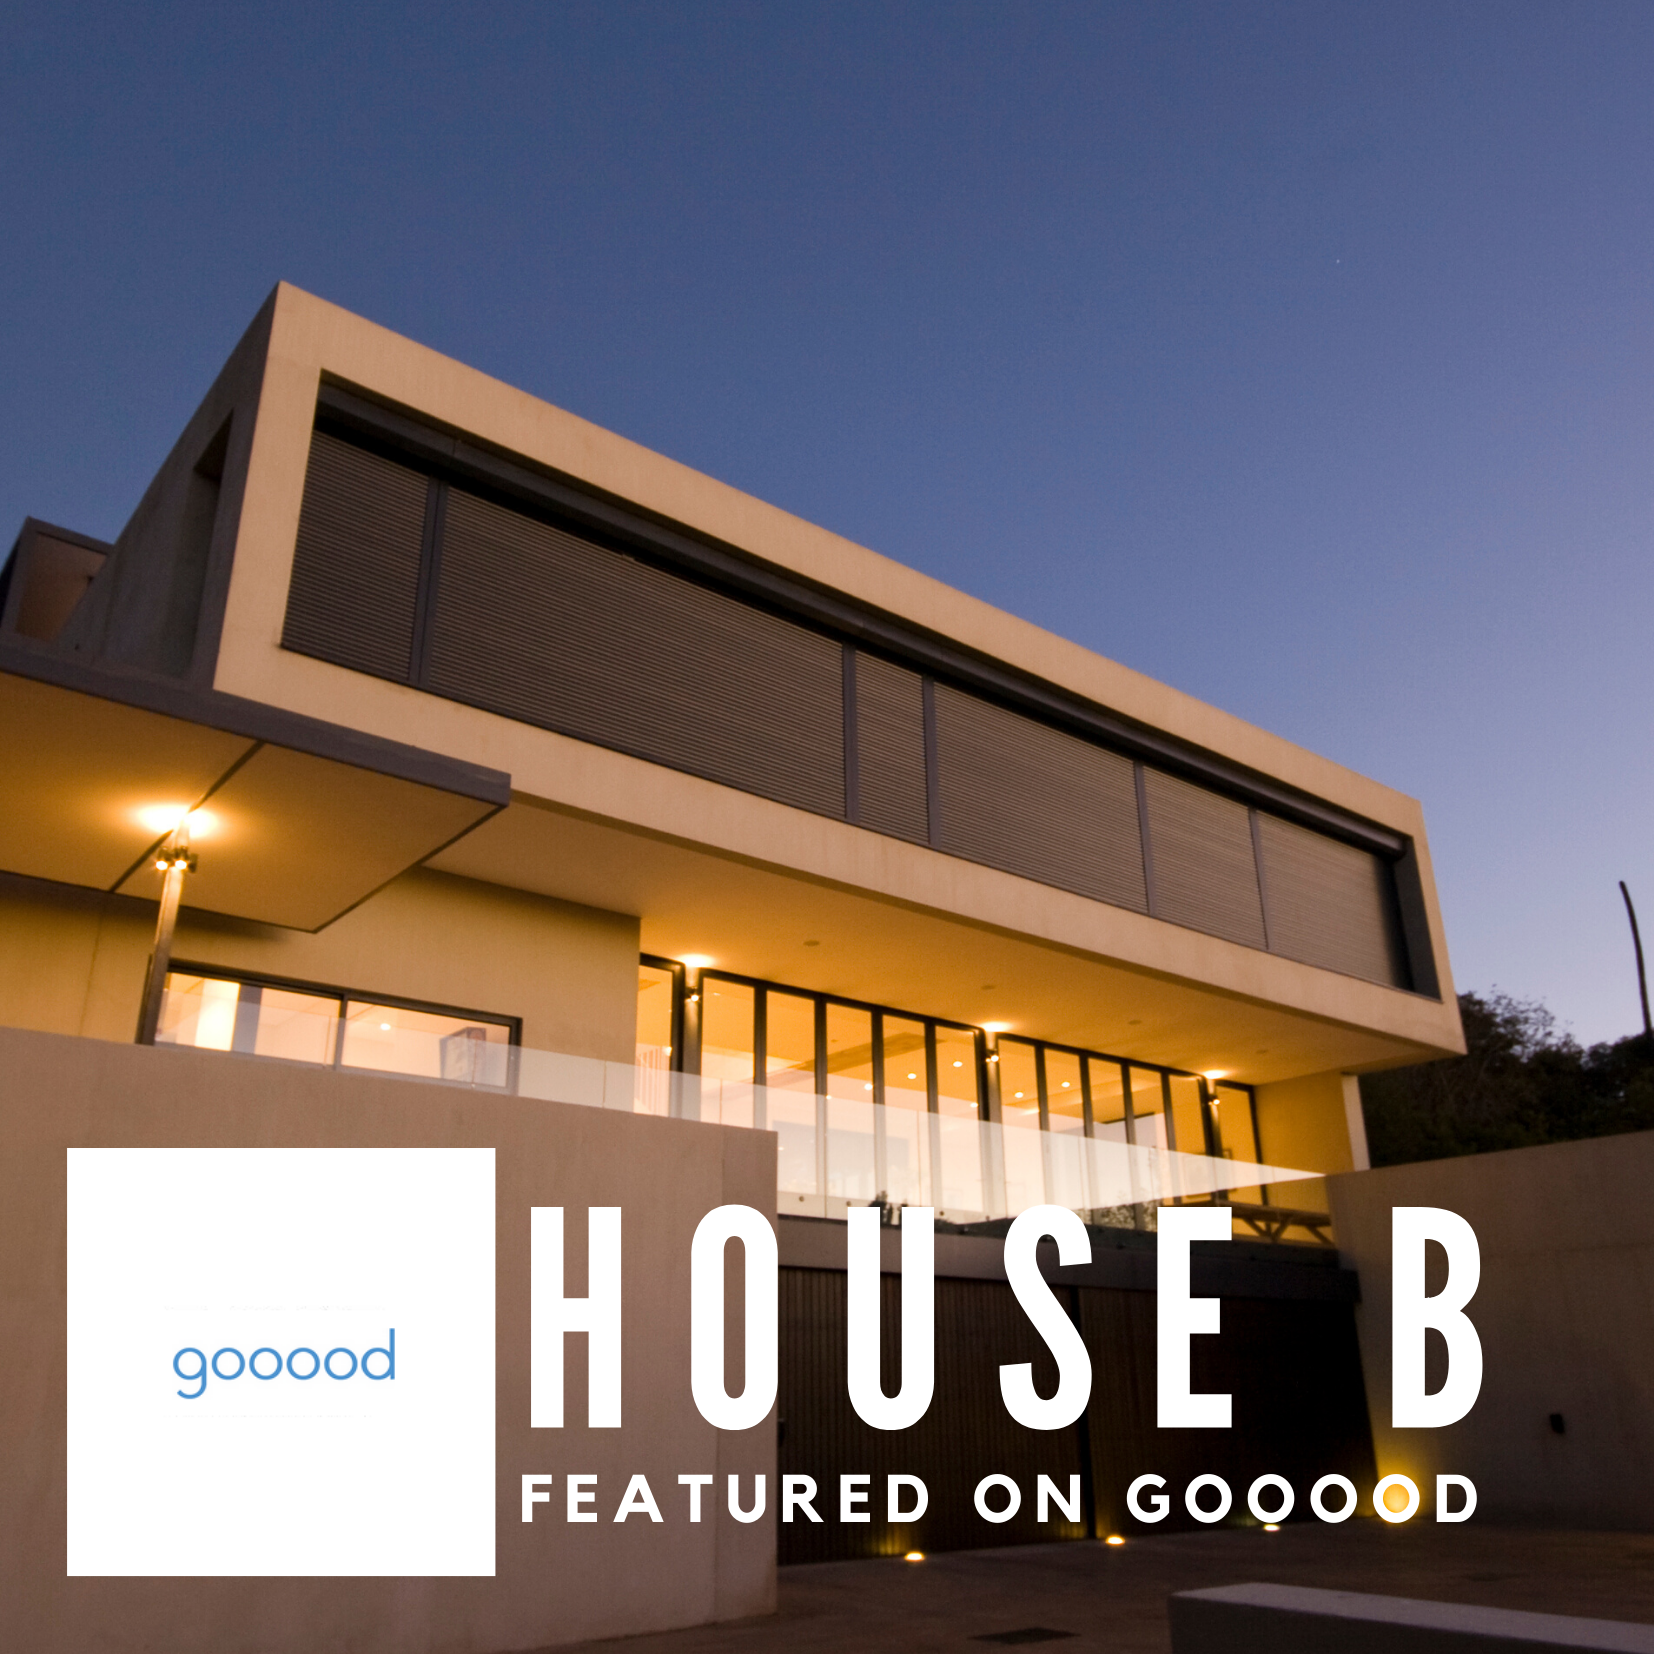 House B featured on Gooood